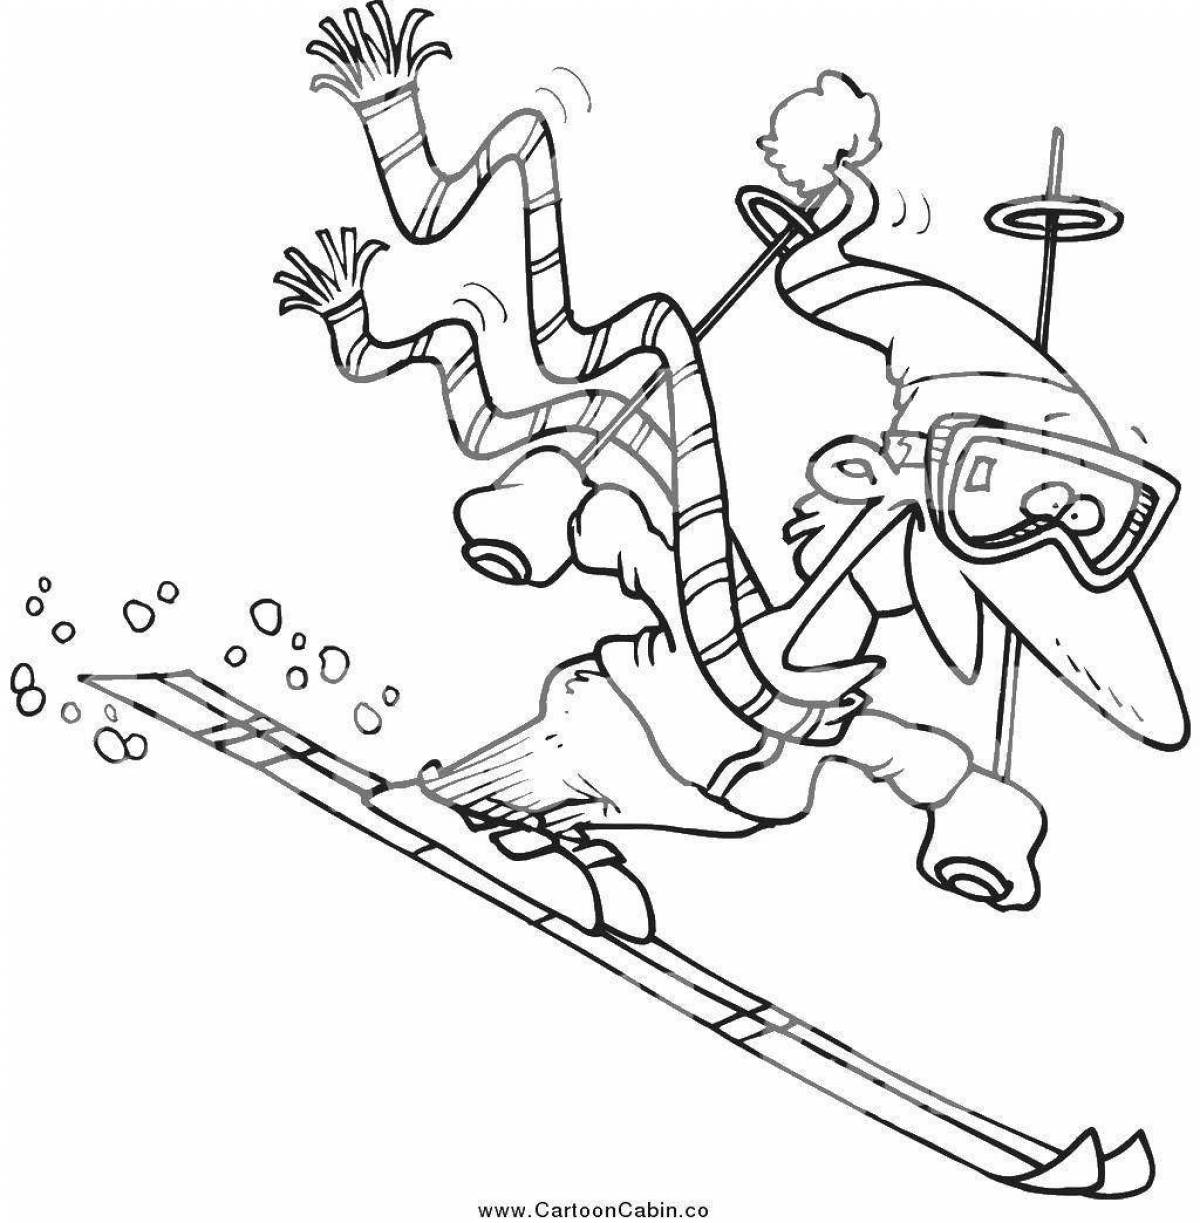 Привлекательные лыжи для детей 3-4 лет